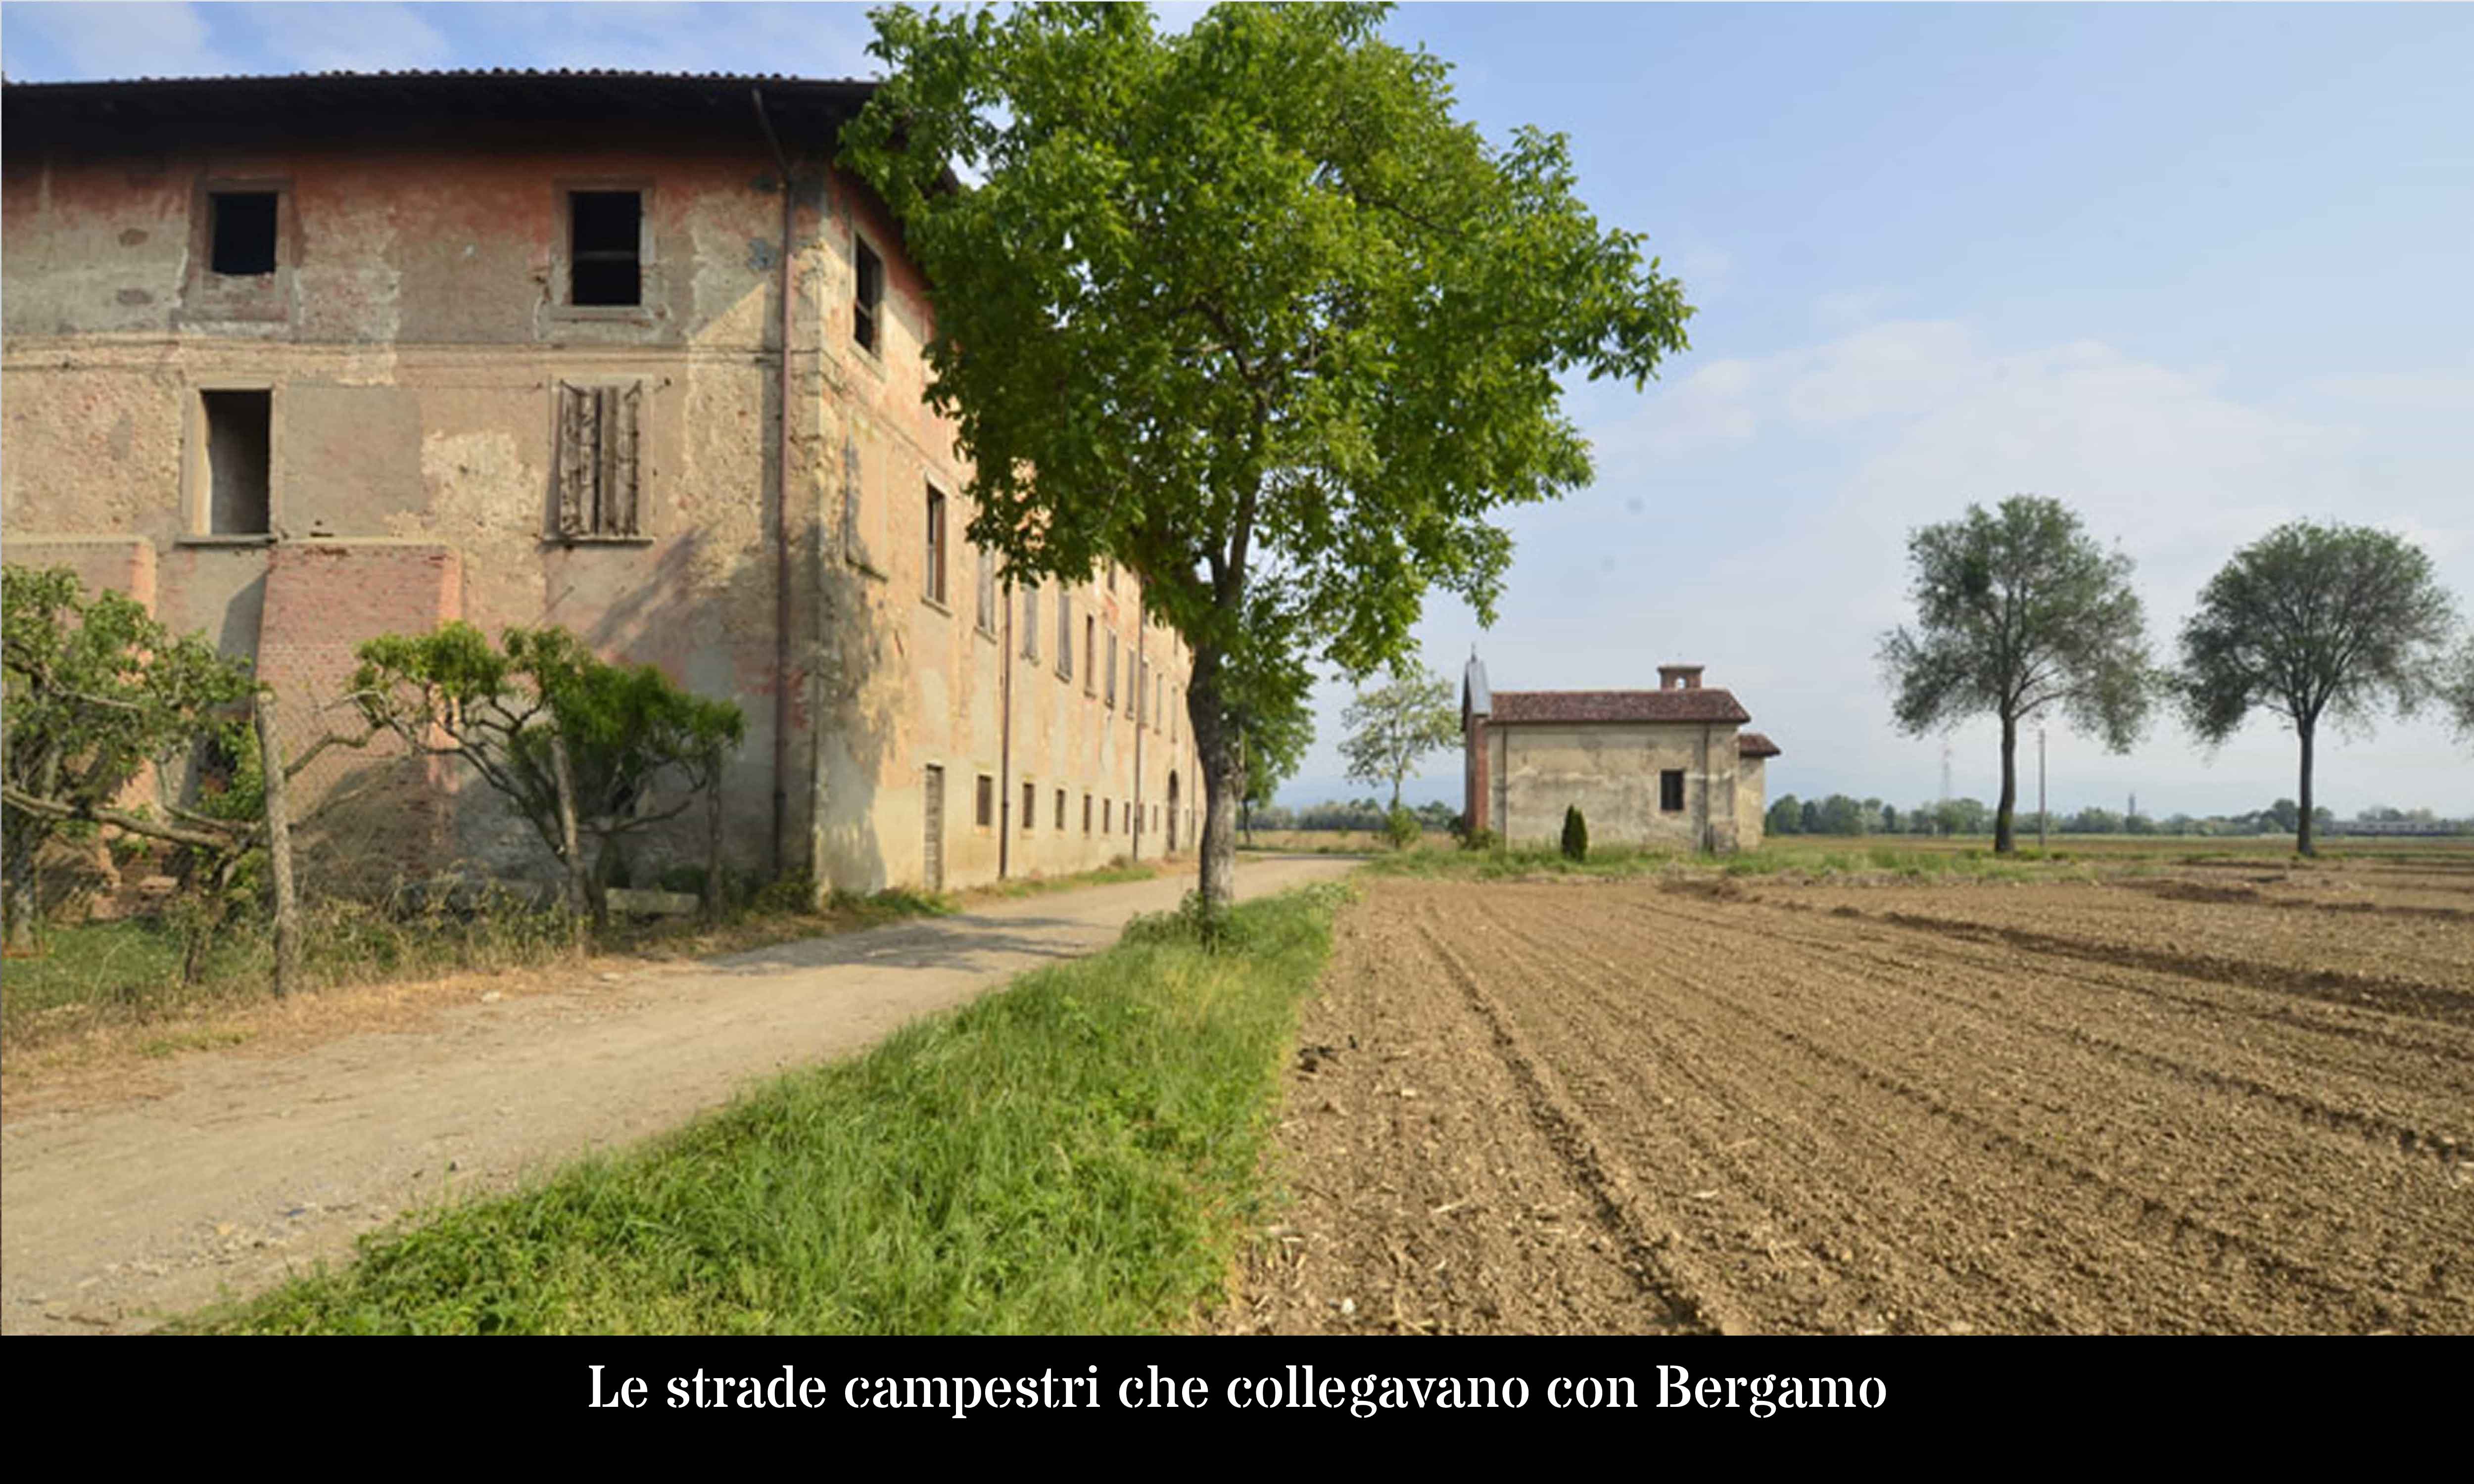 Le strade campestri che collegavano con Bergamo